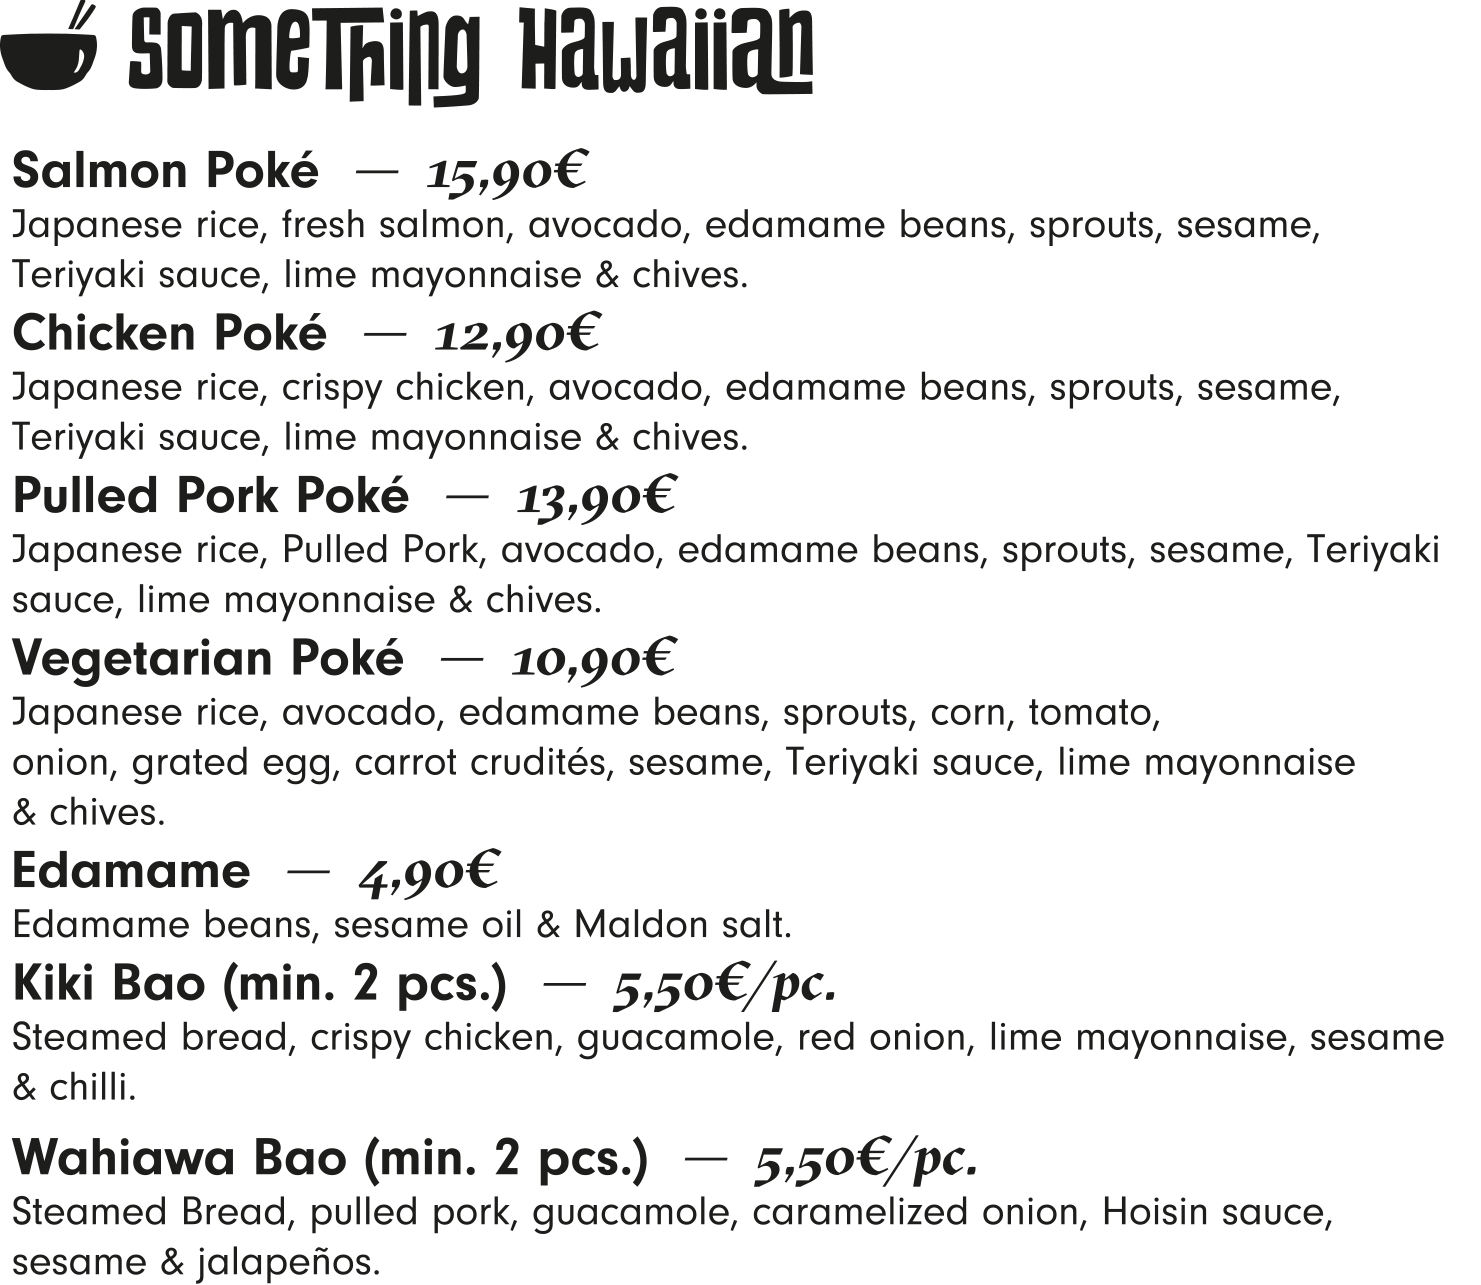 Something Hawaiian